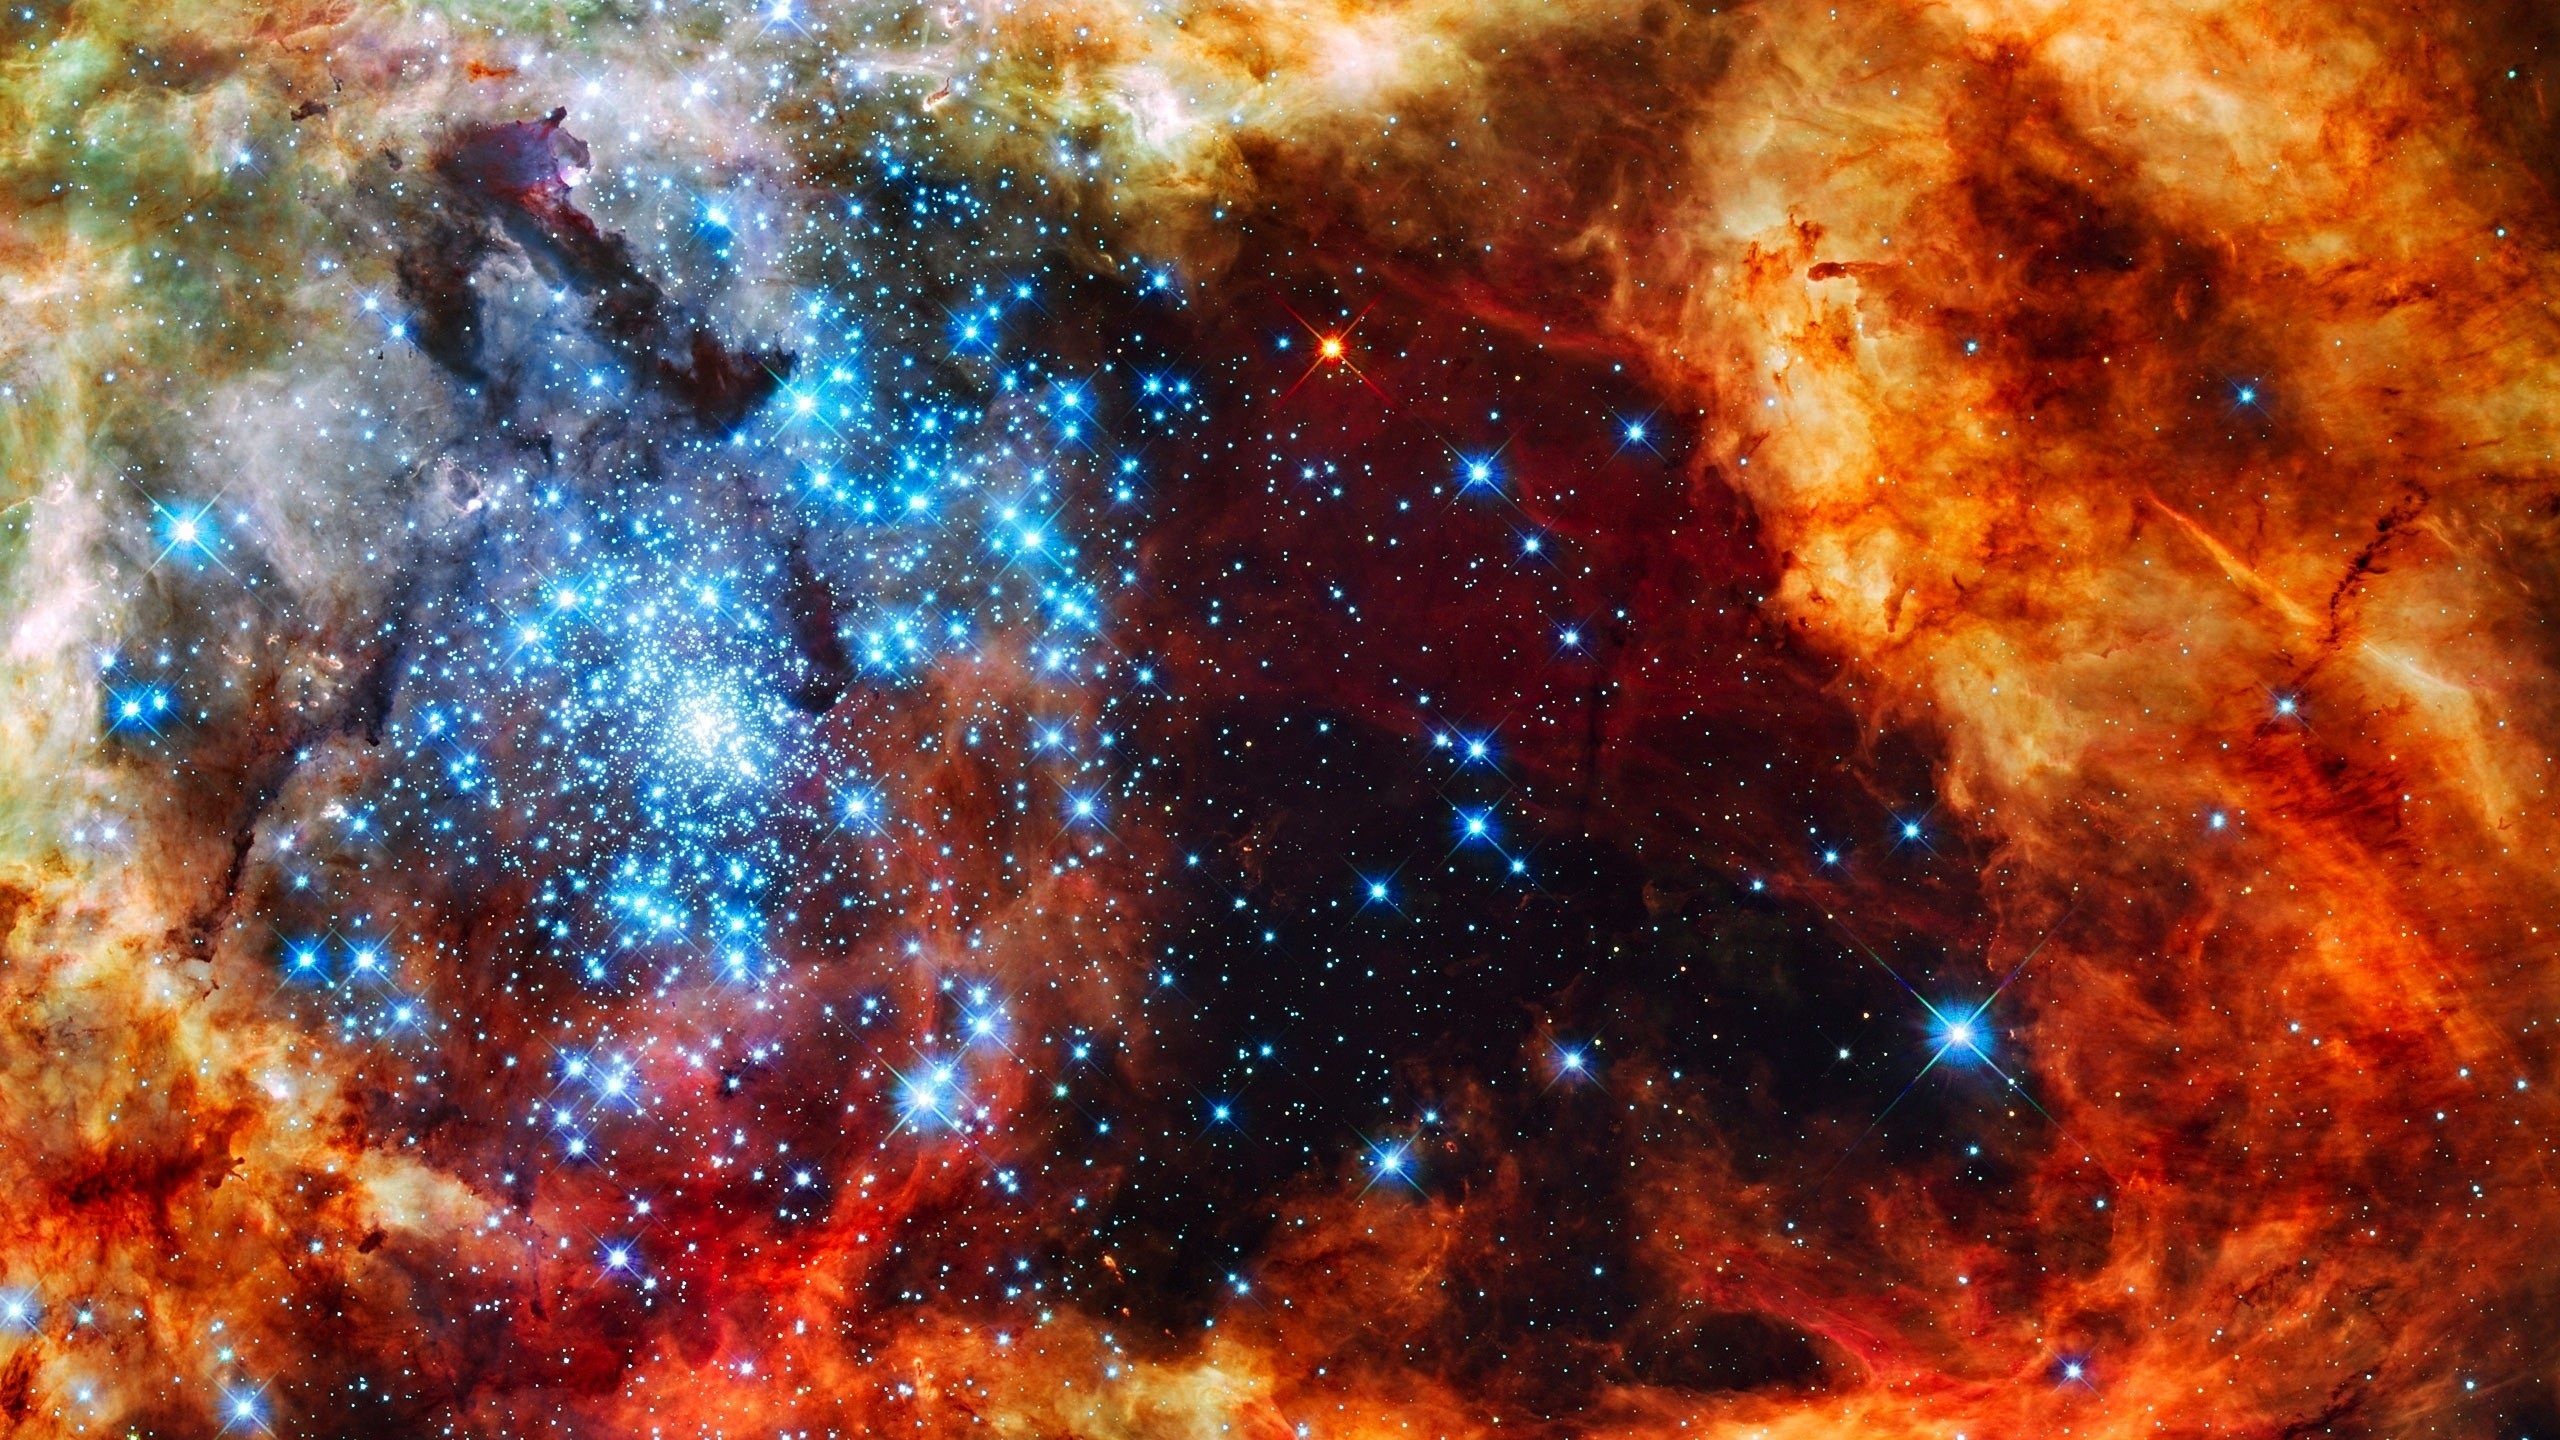 Starry space, Hubble telescope, Space exploration, Astounding images, 2560x1440 HD Desktop